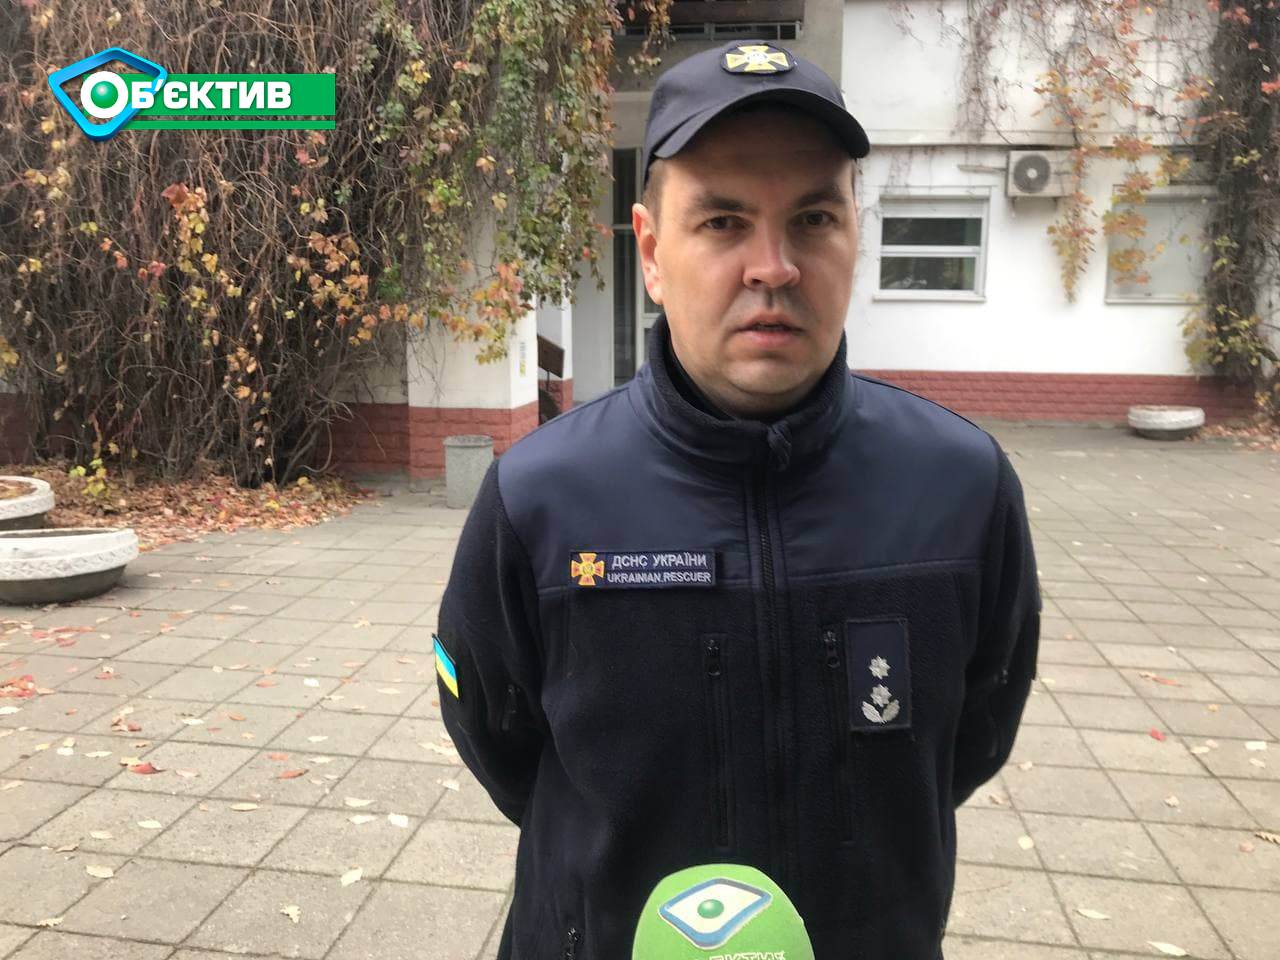 Пресс-секретарь ГУ ГСЧС Украины в Харьковской области рассказал подробности пожара на АЗС под Харьковом 